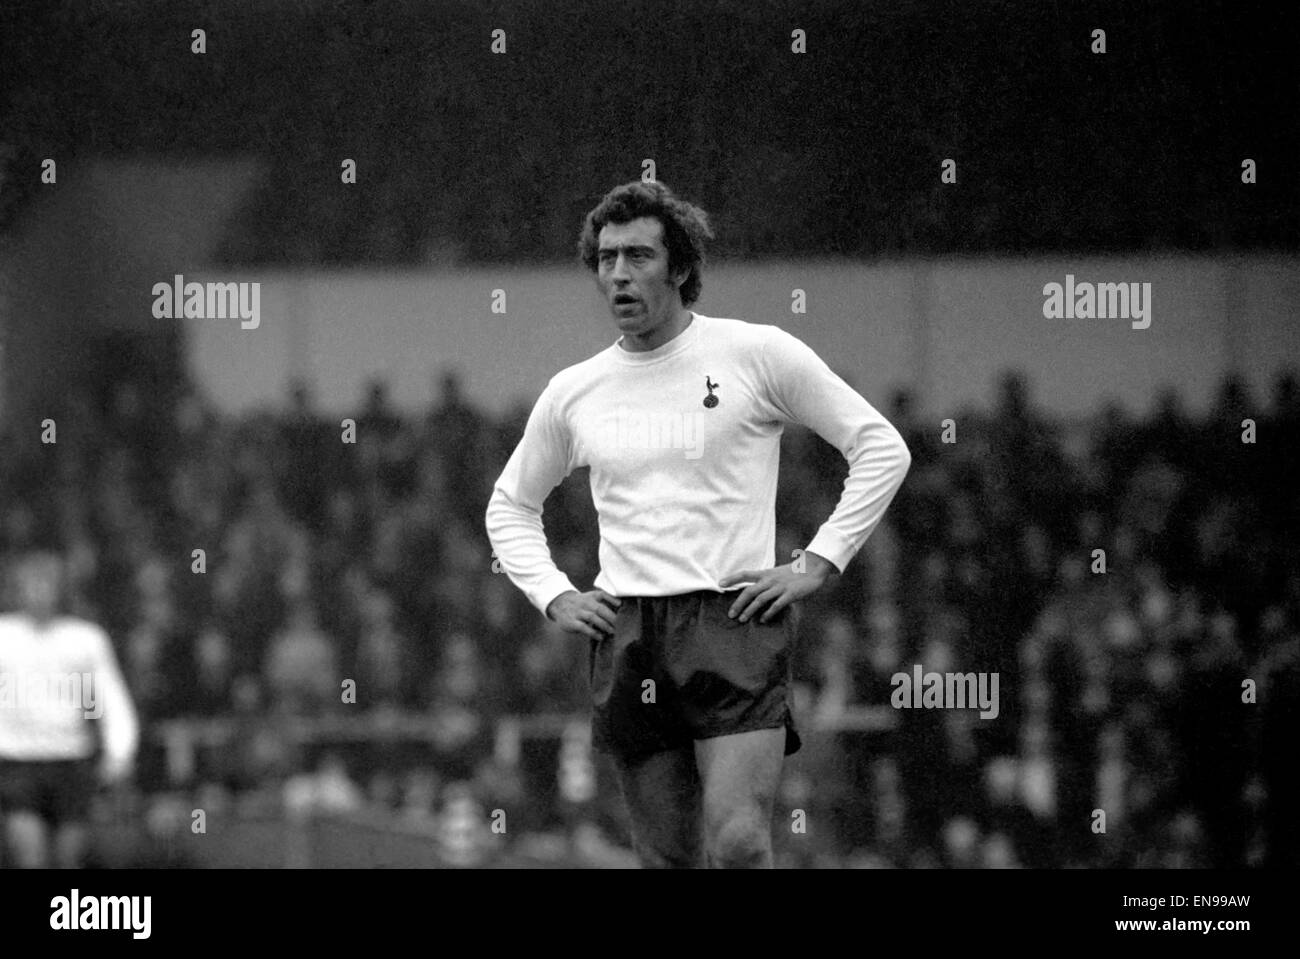 Englische League Division One Match an der White Hart Lane. Tottenham Hotspur 2 V West Ham United 0. Martin Chivers von Sporen 29. Dezember 1973. Stockfoto